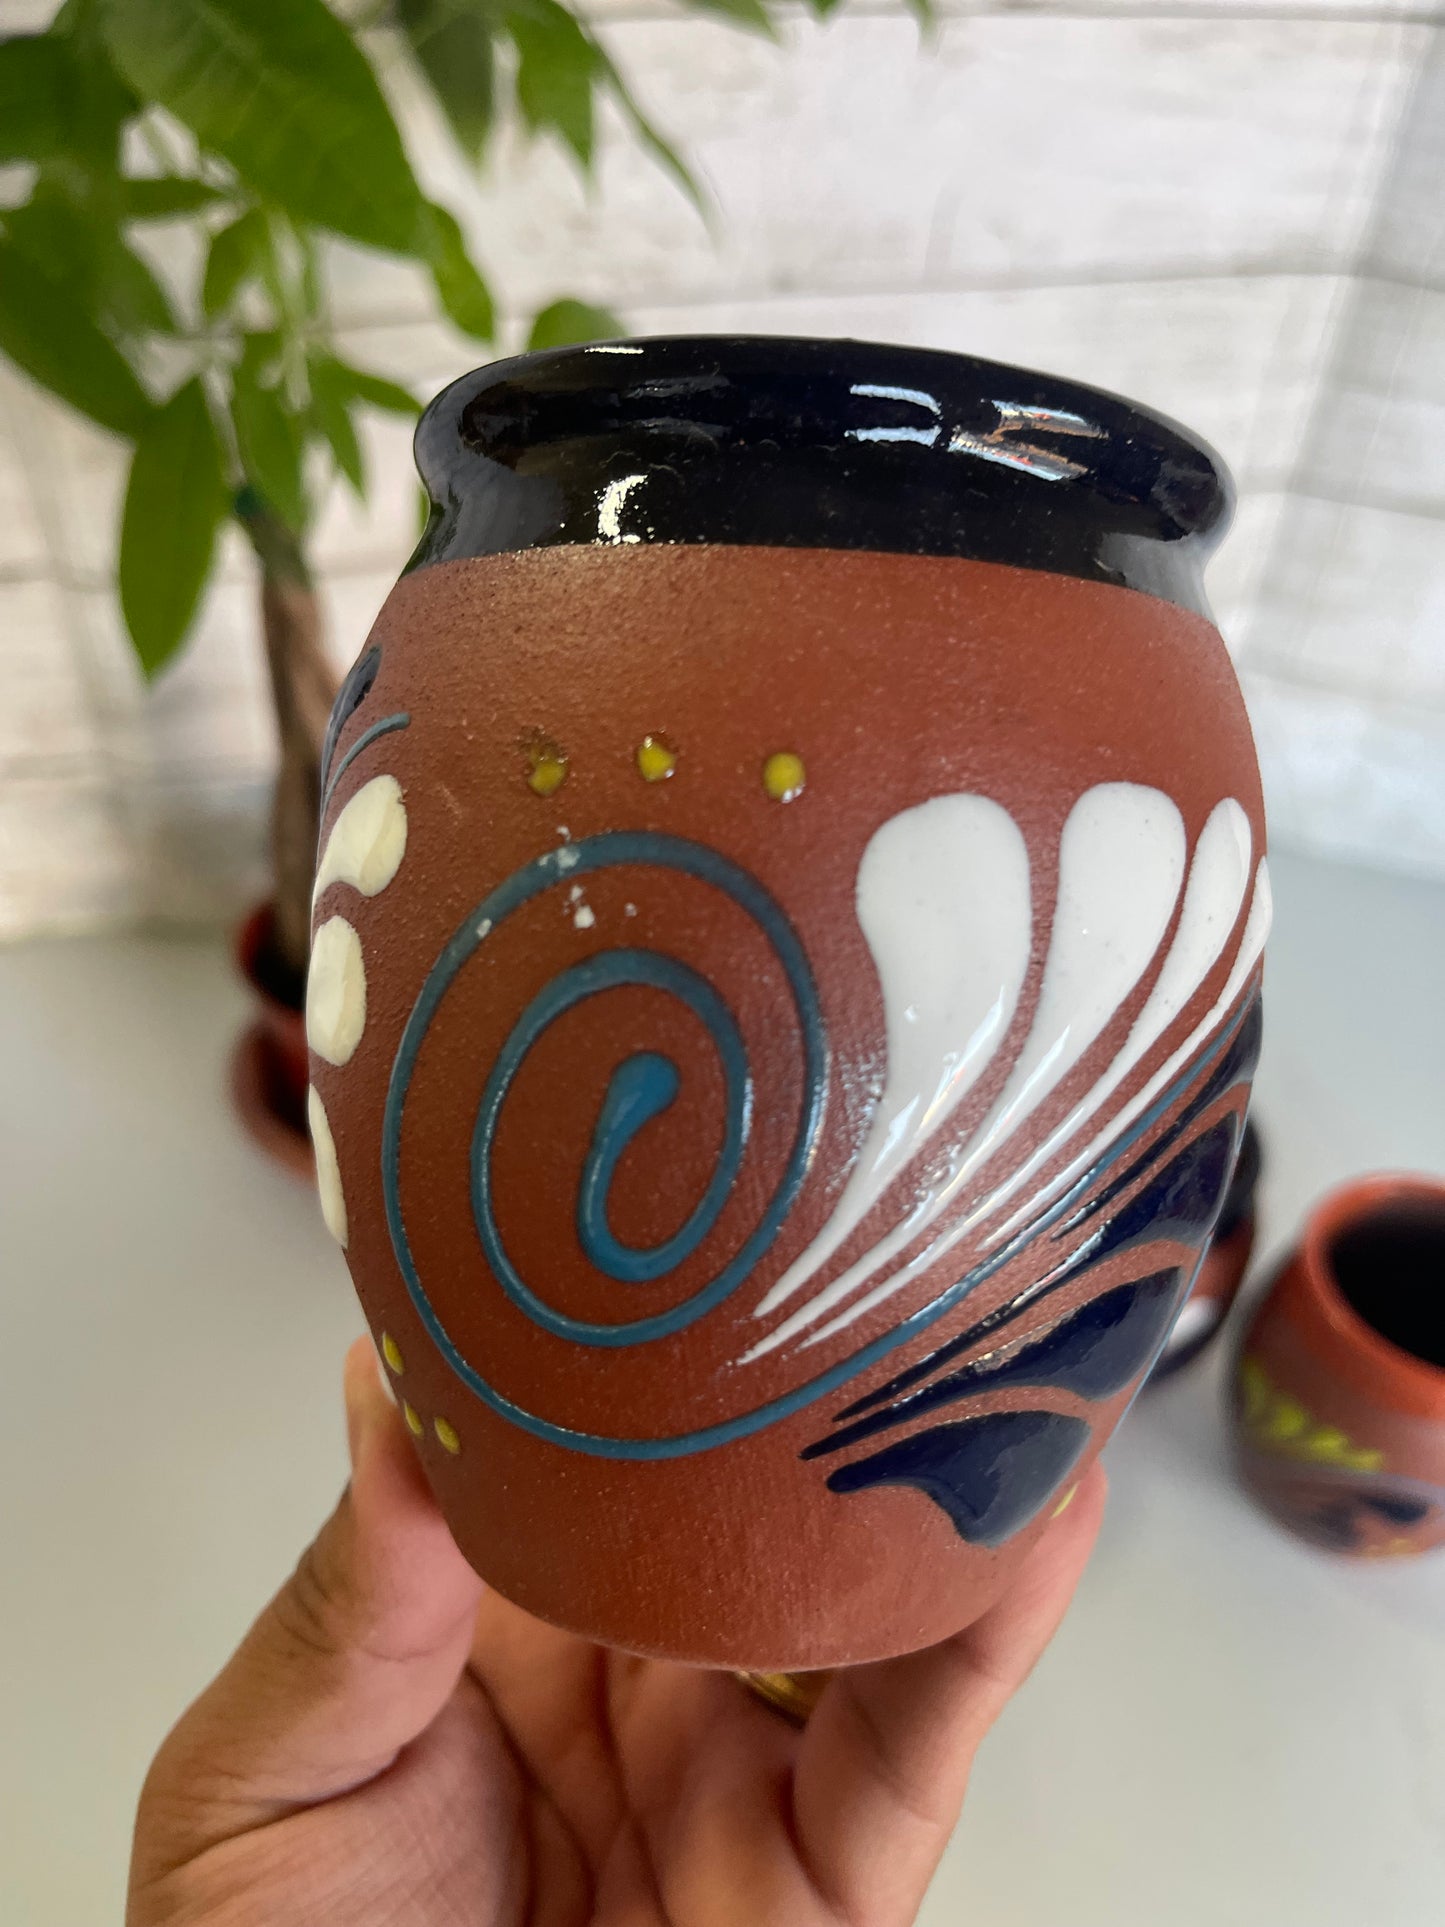 Cantarito de barro decorado/red clay cantarito hand designed/mexico clay cantarito cup